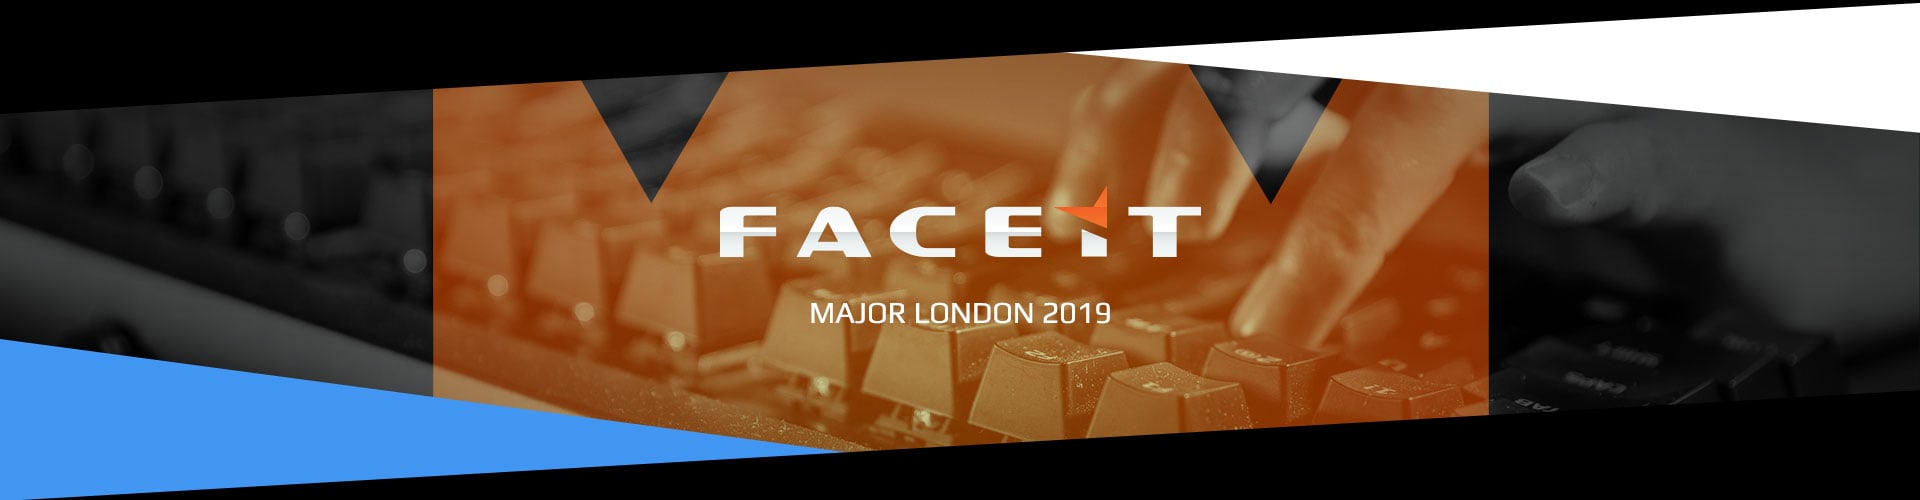 Eventsida för FACEIT Major London arrangerad av Valve